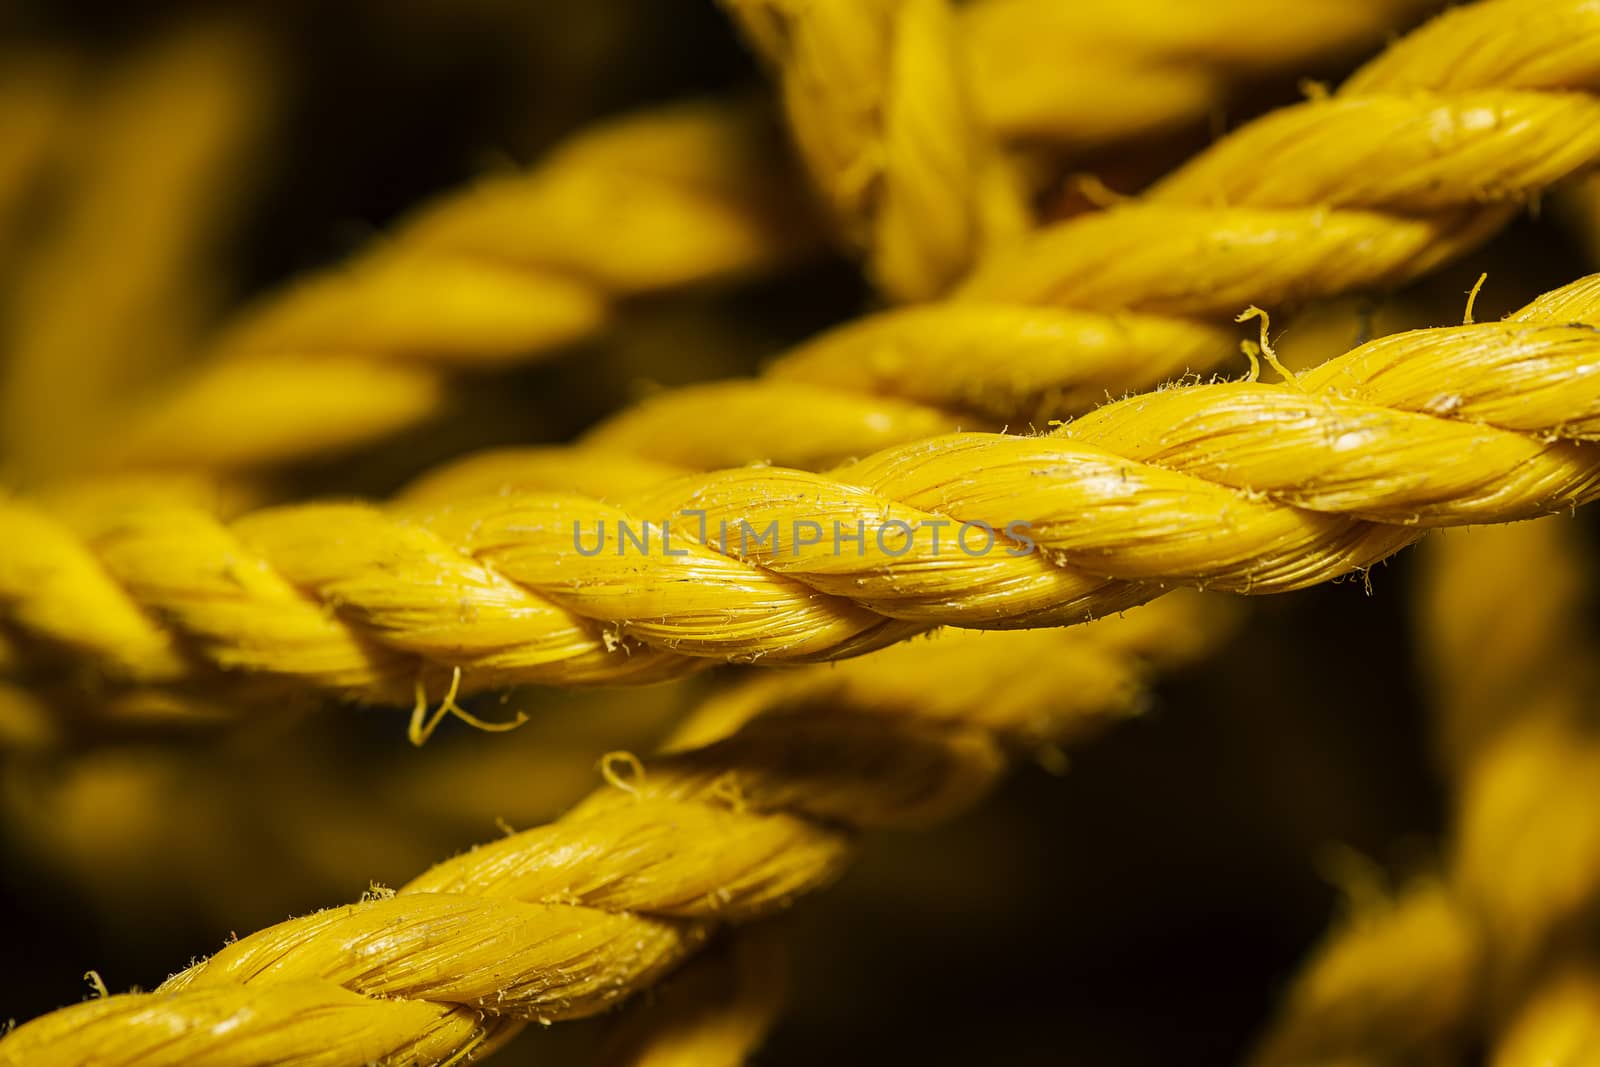 Small yellow nylon rope by mypstudio